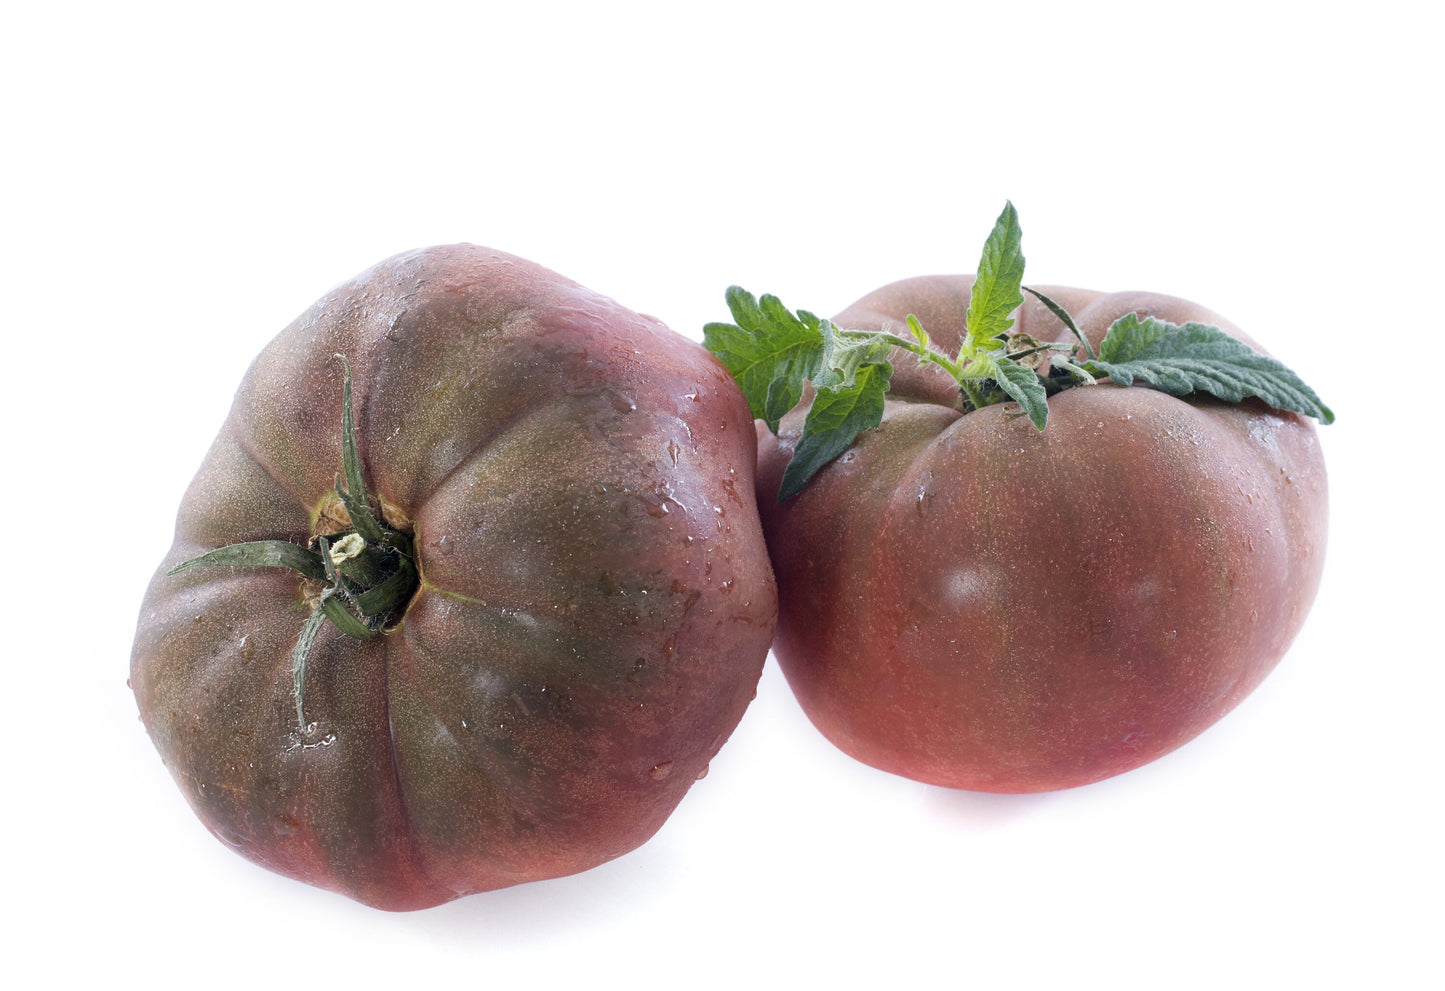 80 BLACK KRIM TOMATO Solanum Lycopersicum Indeterminate Heirloom Beefsteak Fruit Vegetable Seeds